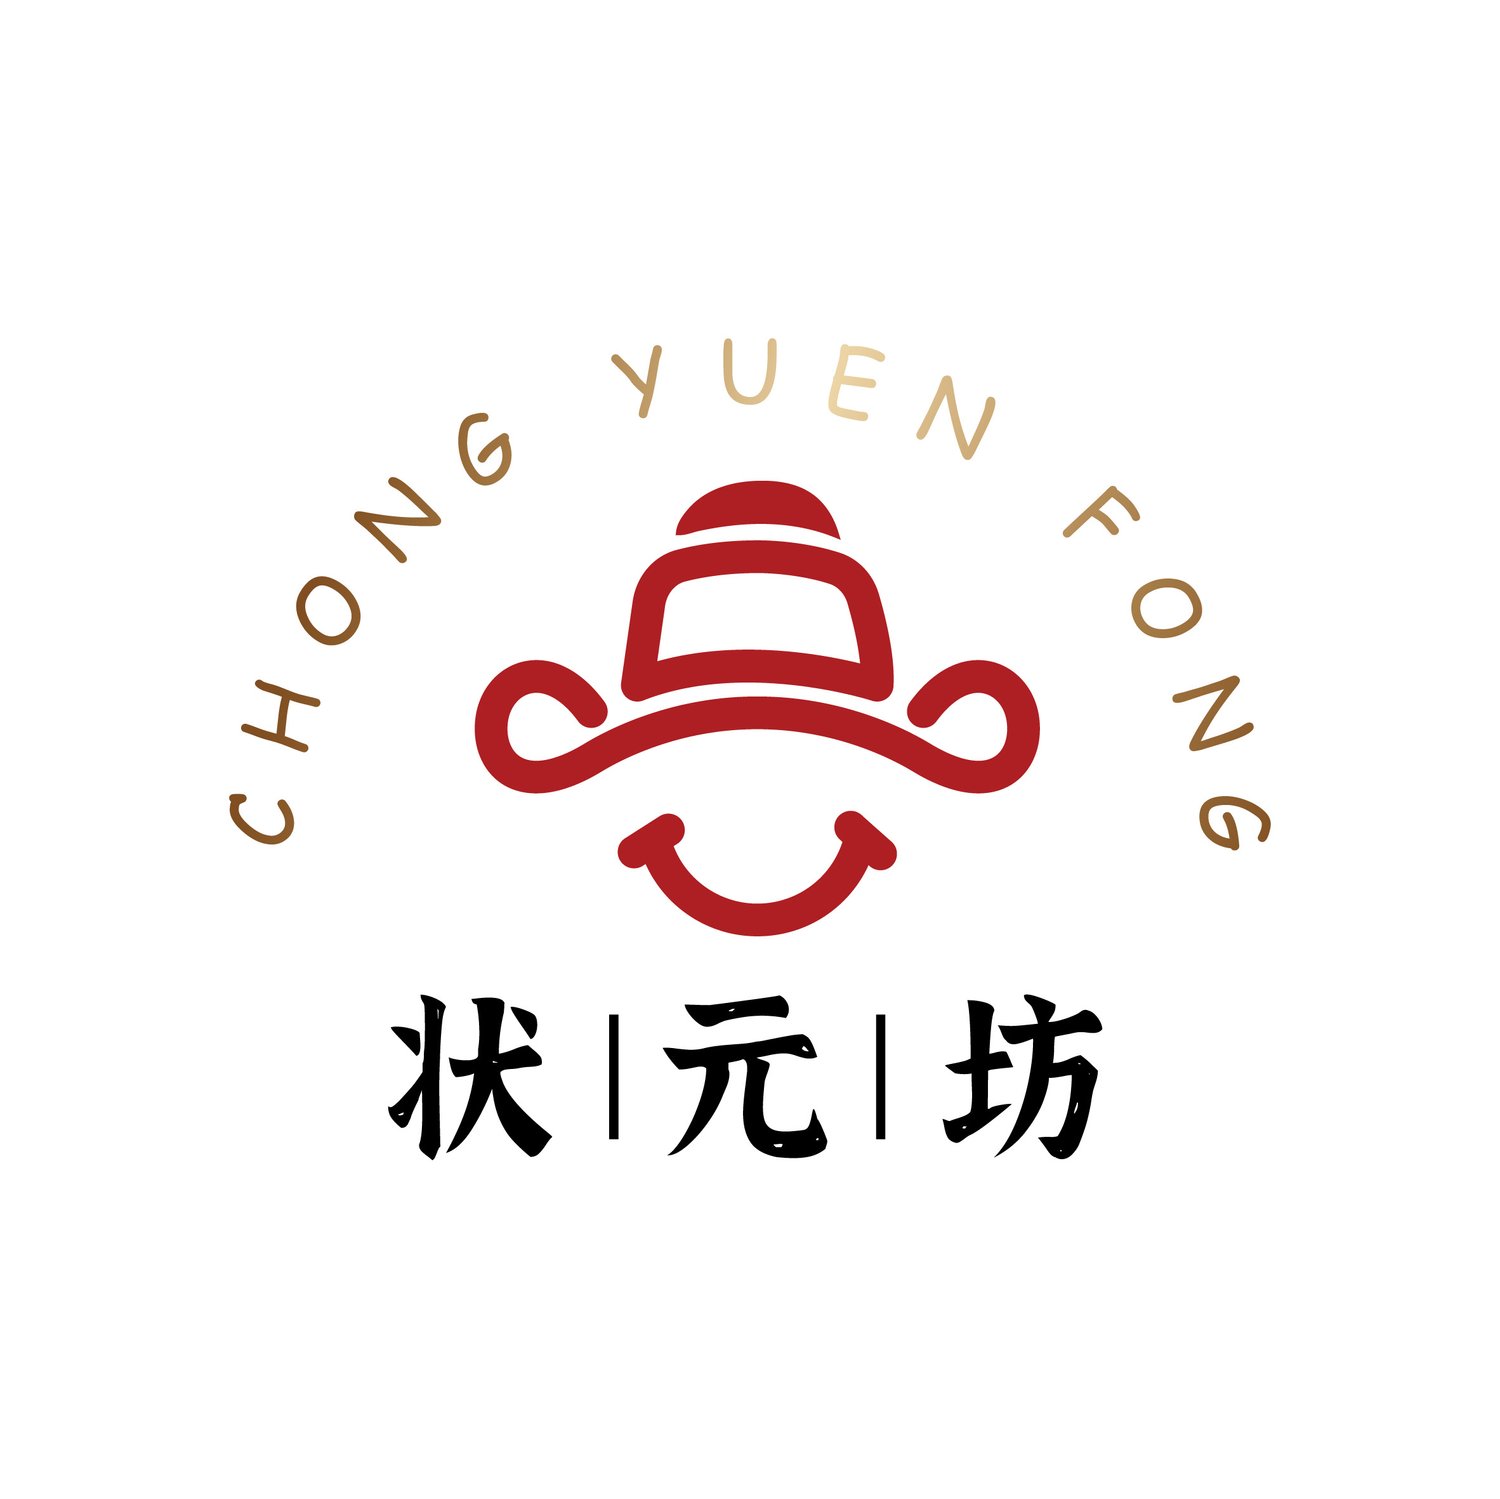 Chong Yuen Fong